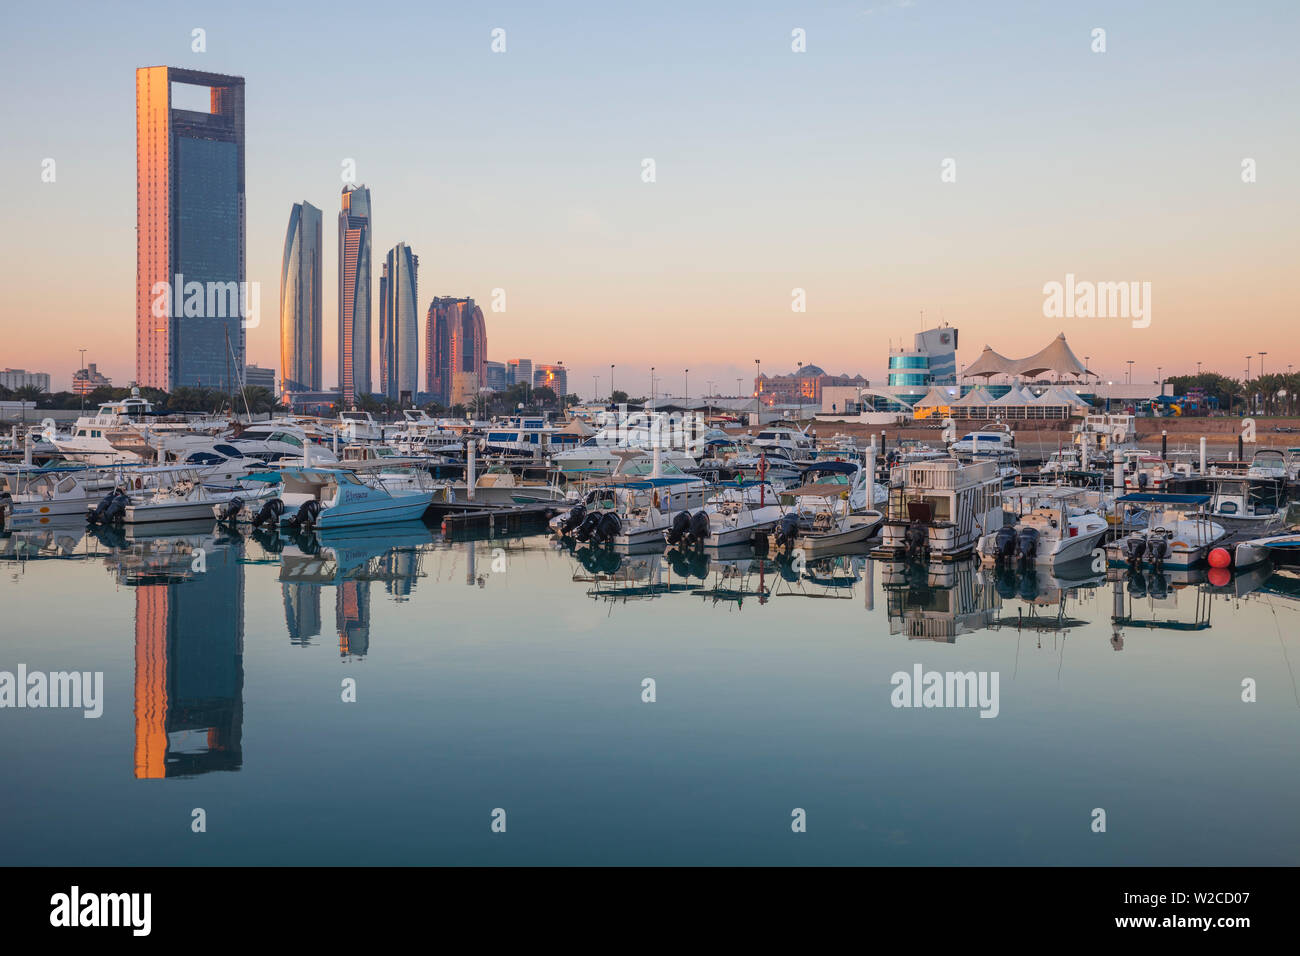 Emirats arabes unis, Abu Dhabi, vue sur la marina et sur les toits de la ville à la recherche vers Abu Dhabi National Oil Company siège, Etihad Towers, le Royal Rose Hotel et à droite l'Abu Dhabi International Marine Sports Club Banque D'Images